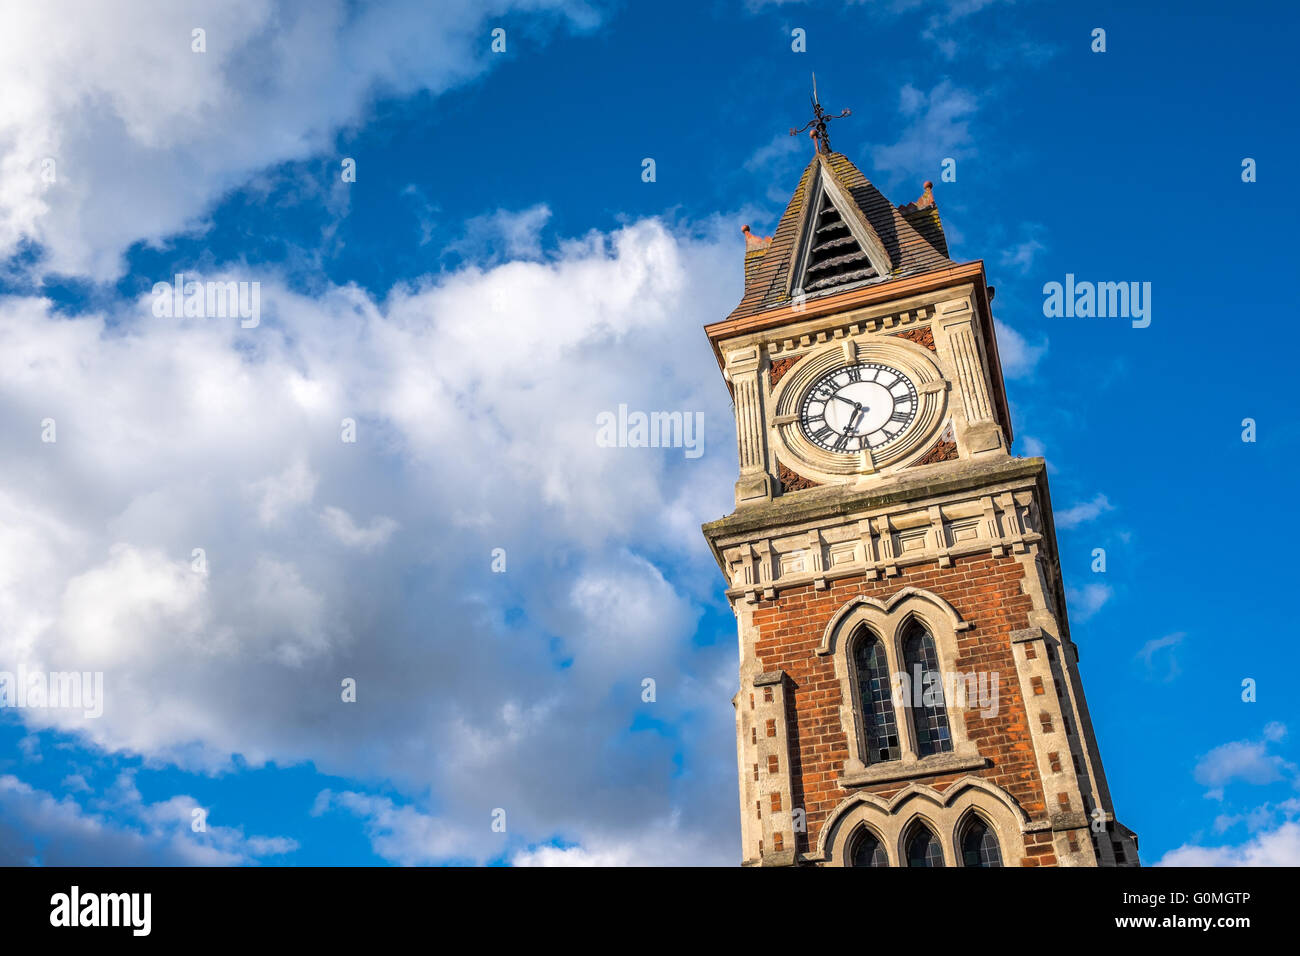 Newmarket town tower ciel bleu avec des nuages blancs inquiétants de temps Banque D'Images